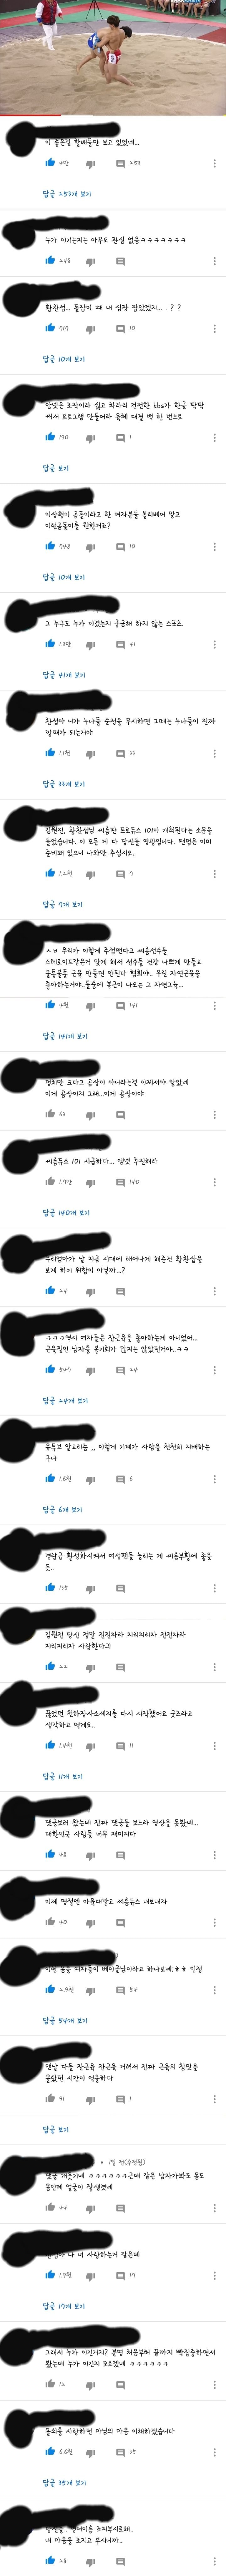 씨름 근육남 유튜브 댓글 주접근황